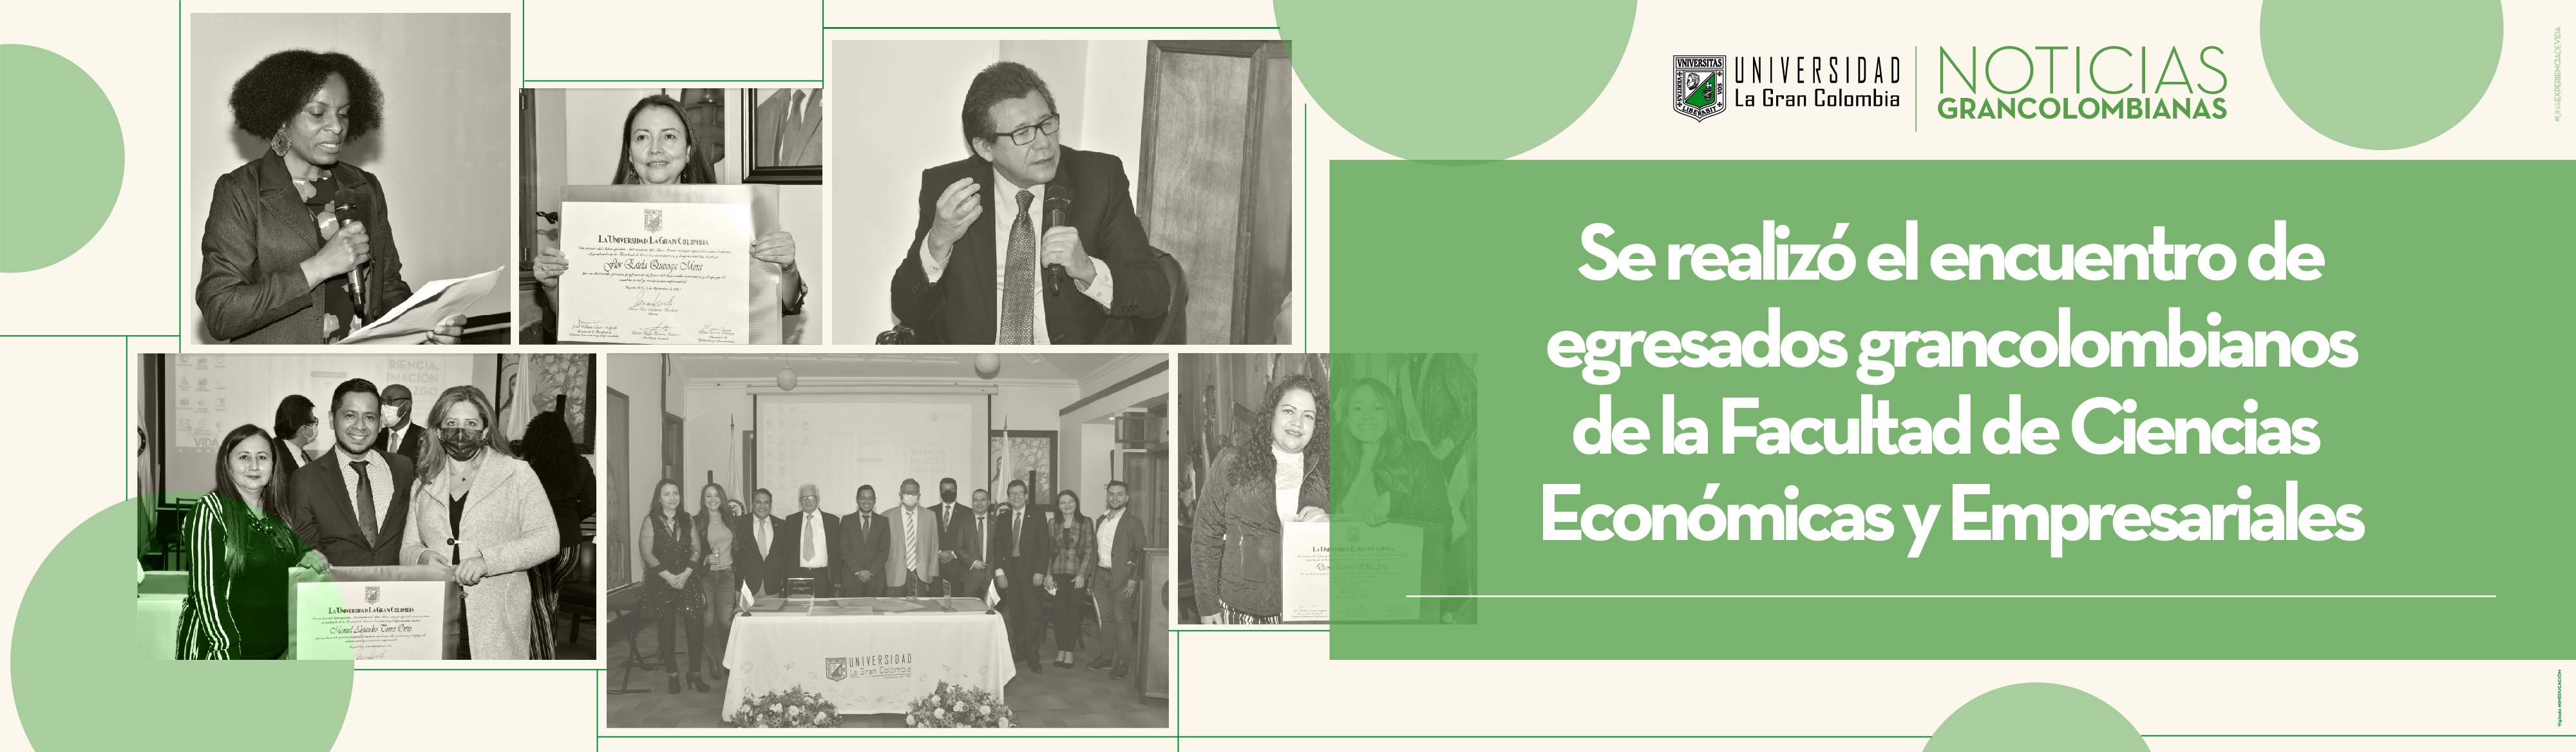 Se realizó el encuentro de egresados grancolombianos de la Facultad de Ciencias Económicas y Empresariales